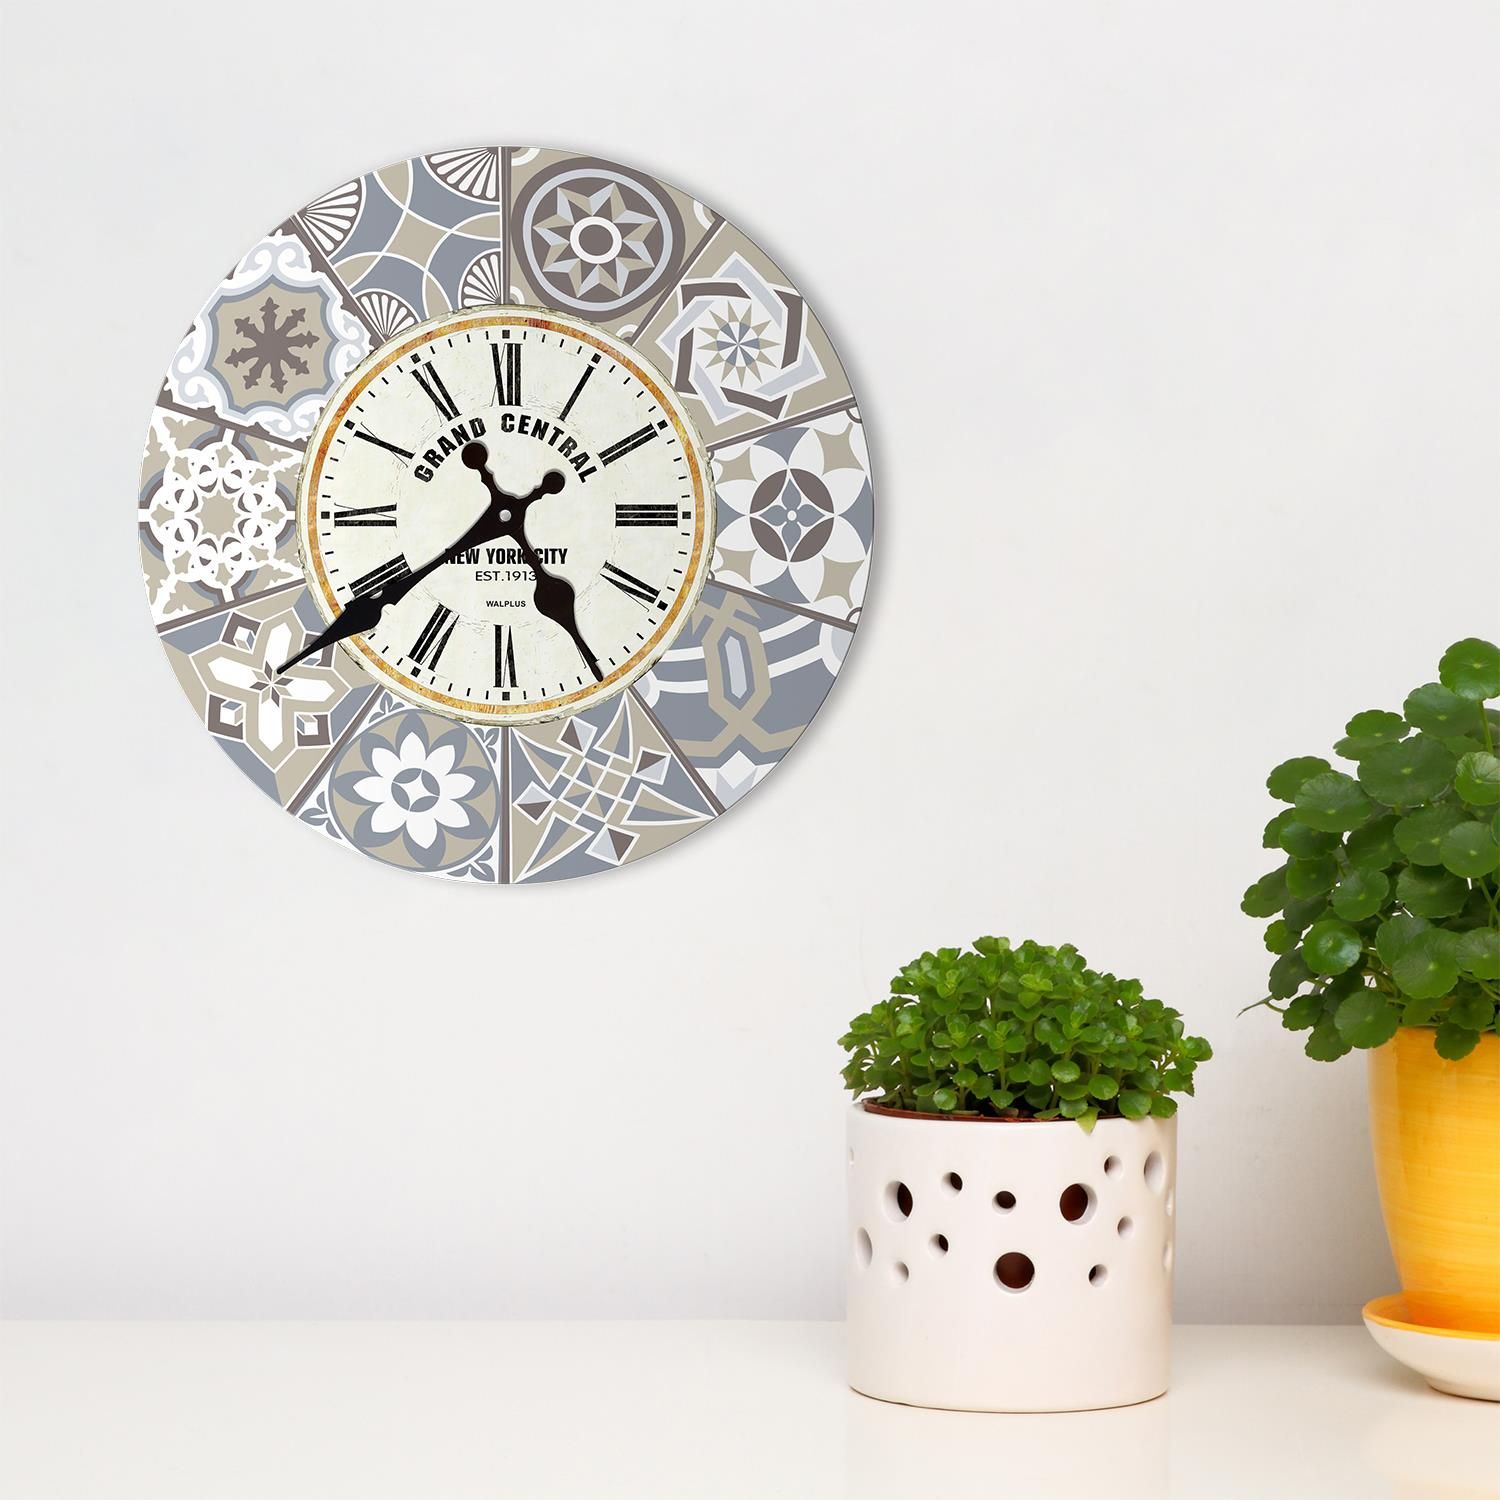 Wooden Round Wall Clock School Office Home Kitchen Decor Quartz Designs 23 cm 